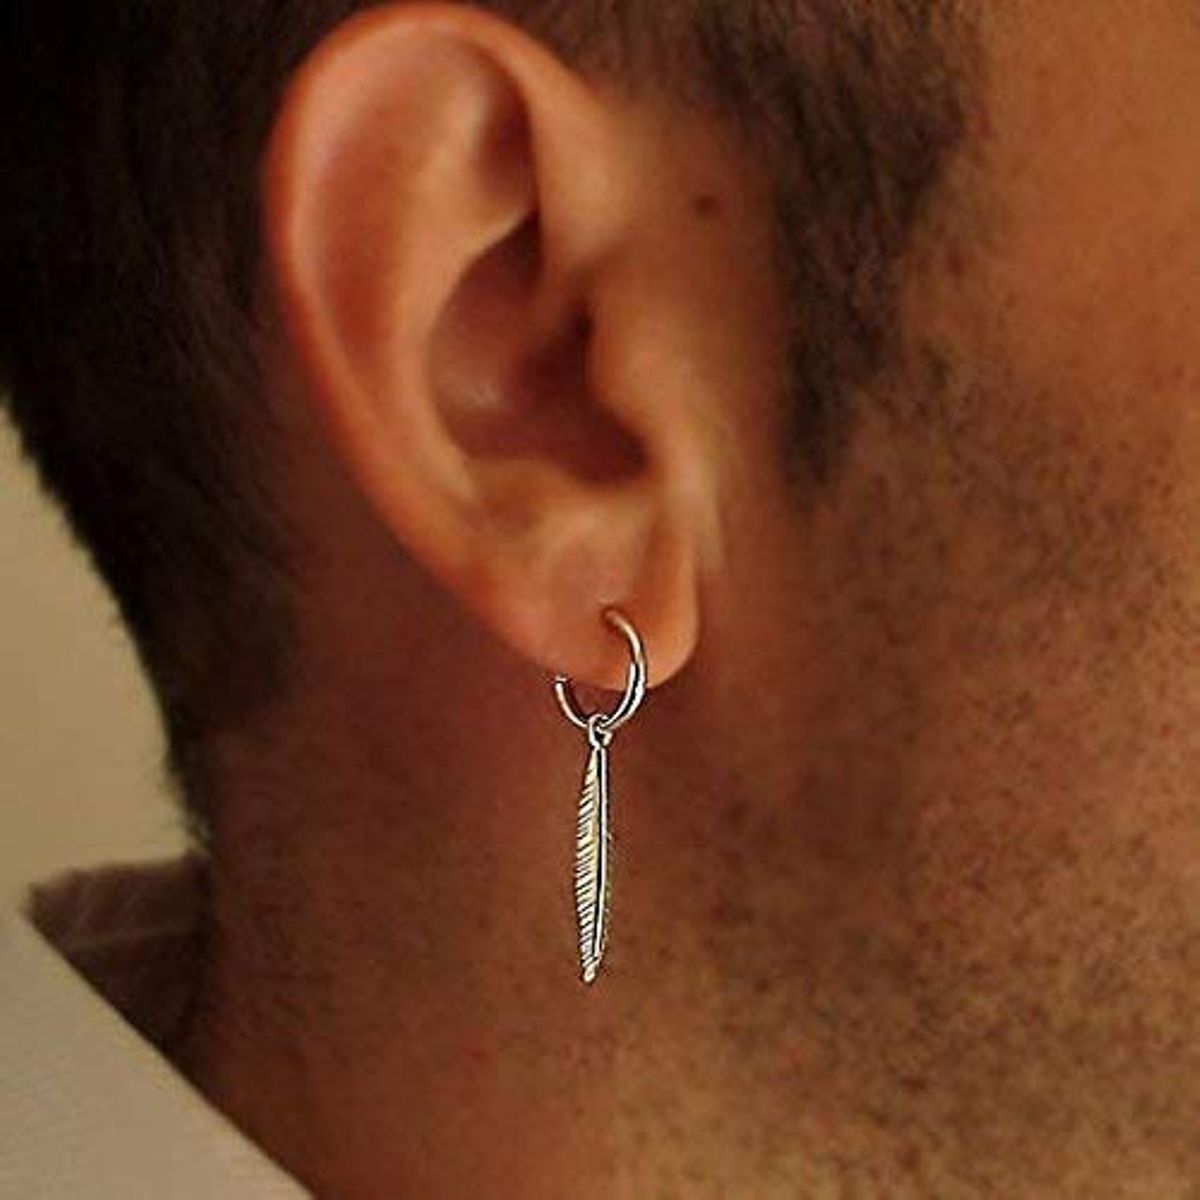 Which ear does a man wear an earring